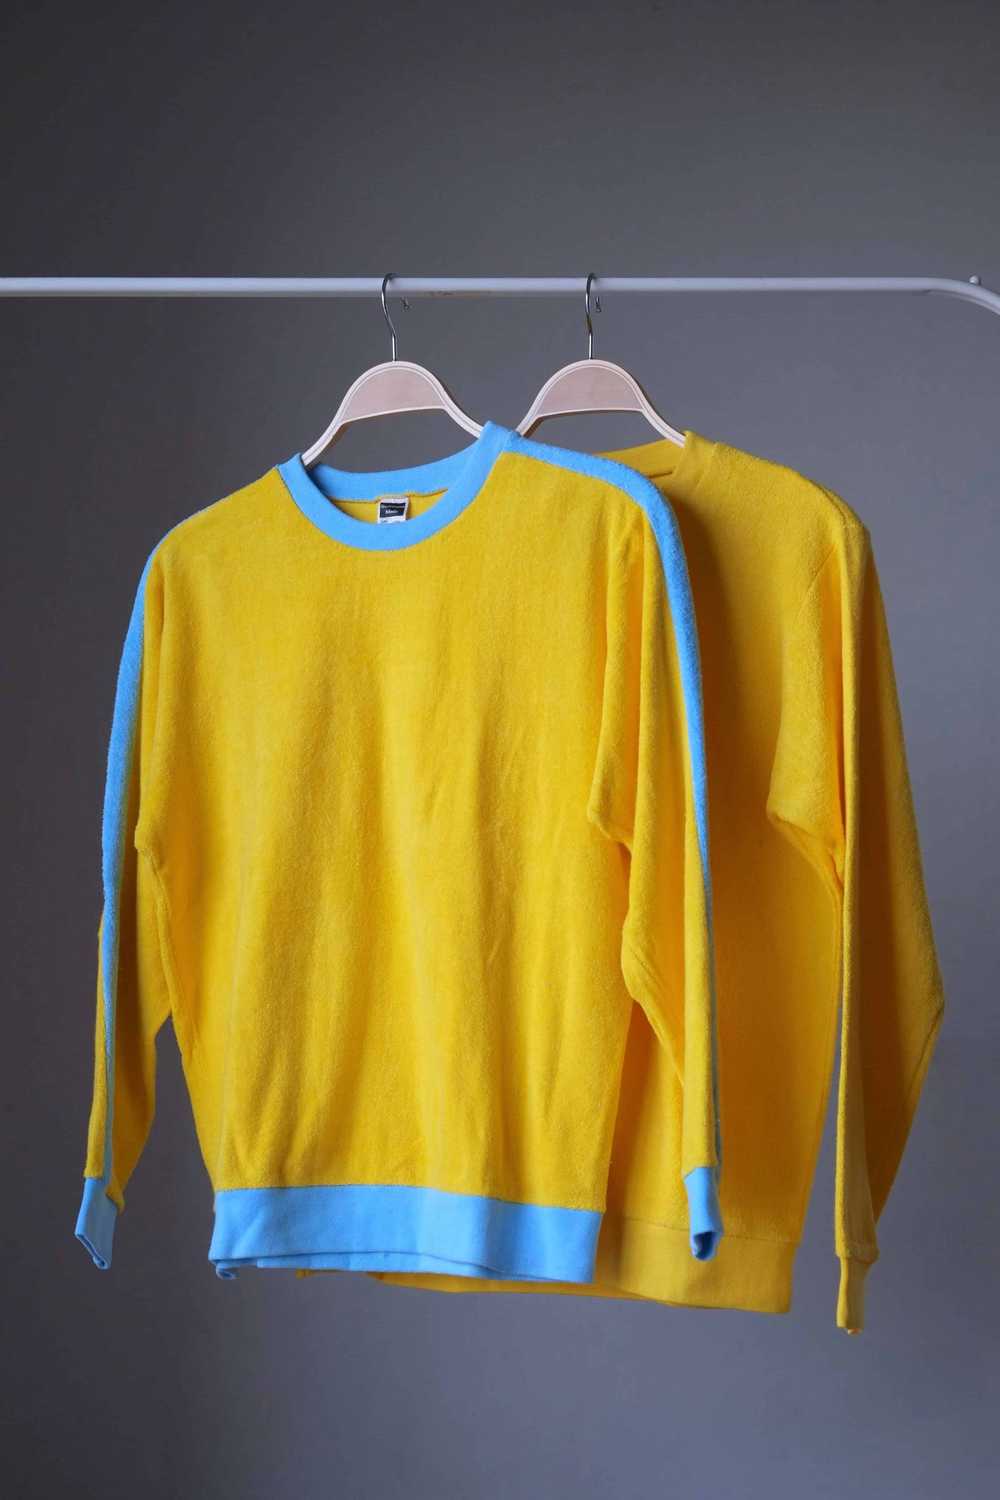 RESTOSANA Vintage Terry Sweatshirt - image 2